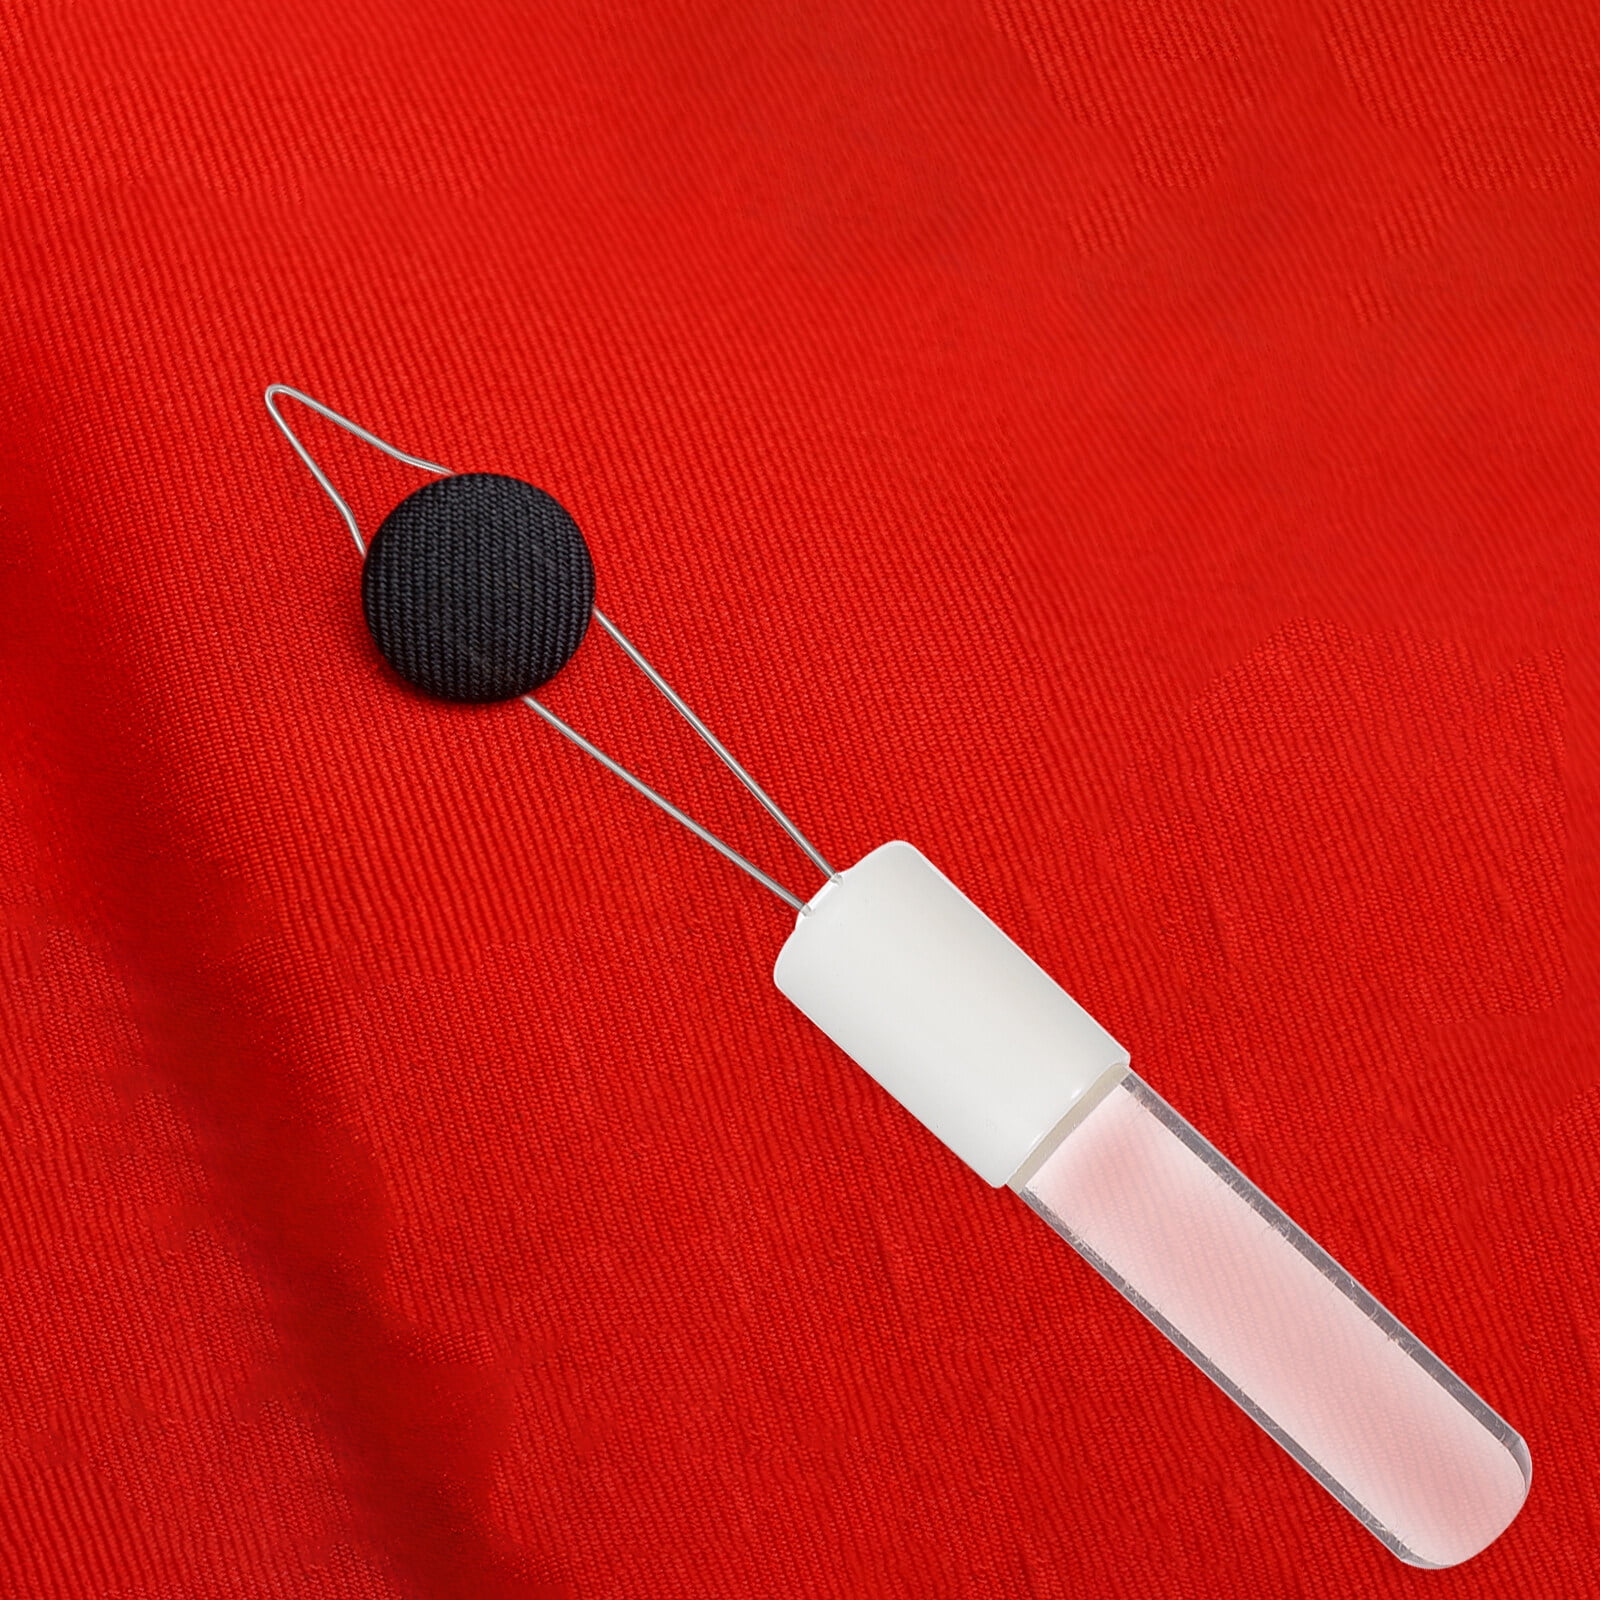 Button Hook Zipper Helper Tool Aid Hand Puller Elderly Device